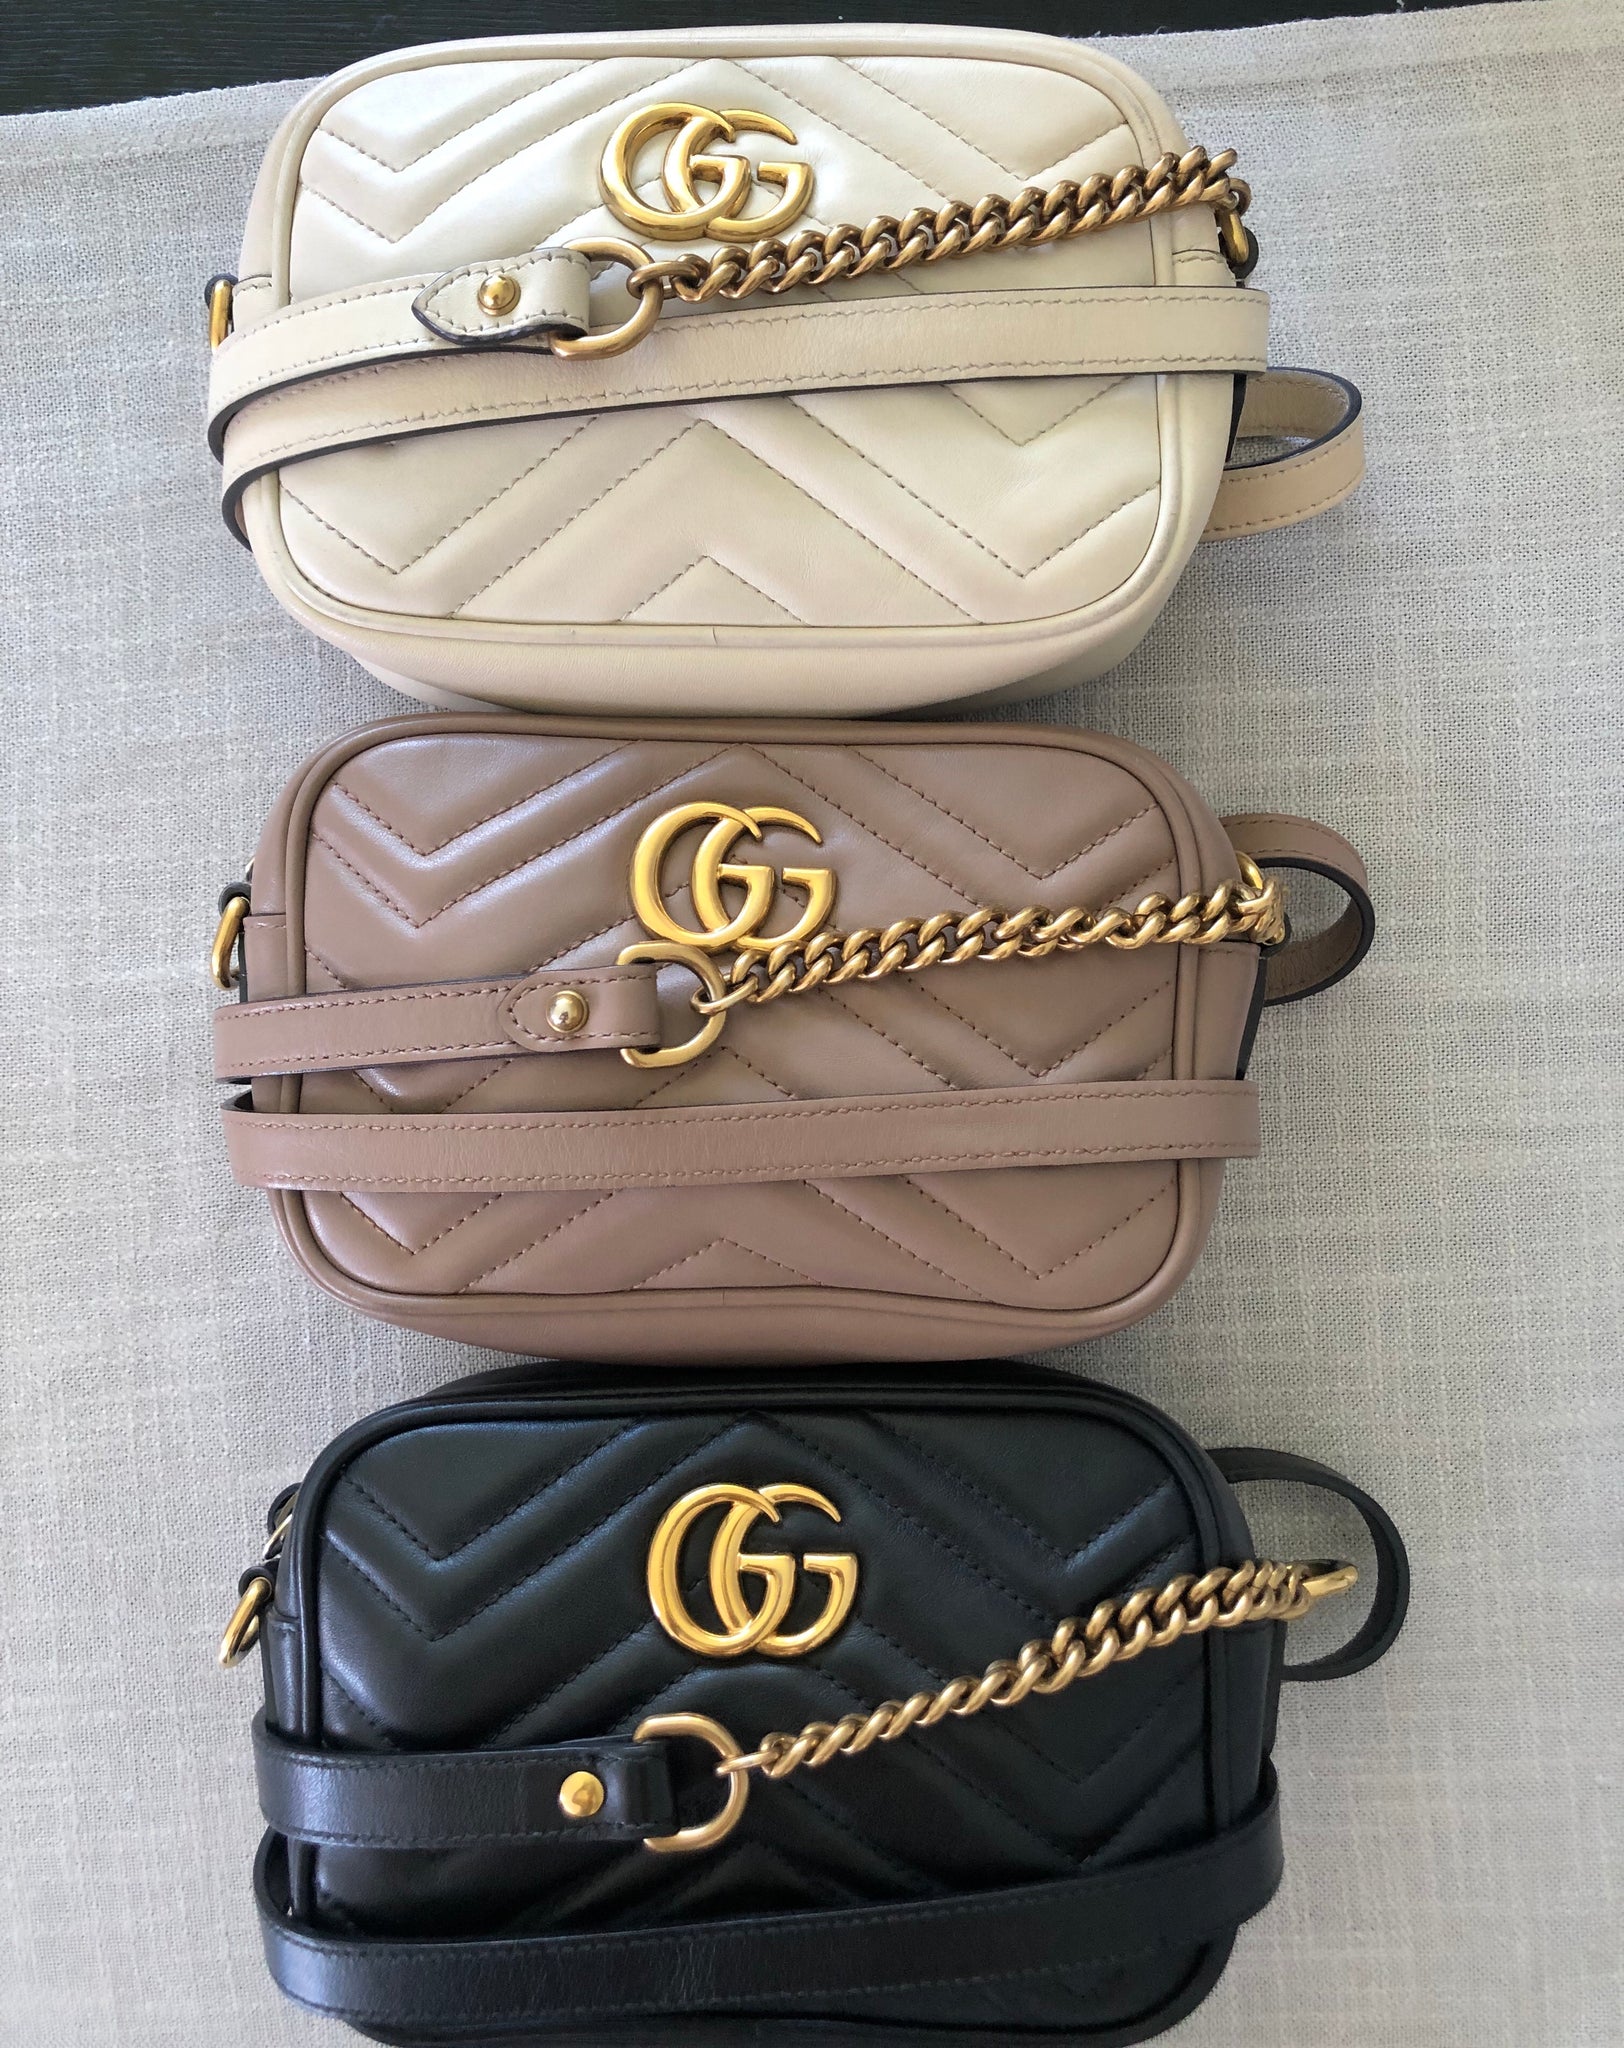 Gucci GG mini marmont chain bag off white – Style Secret